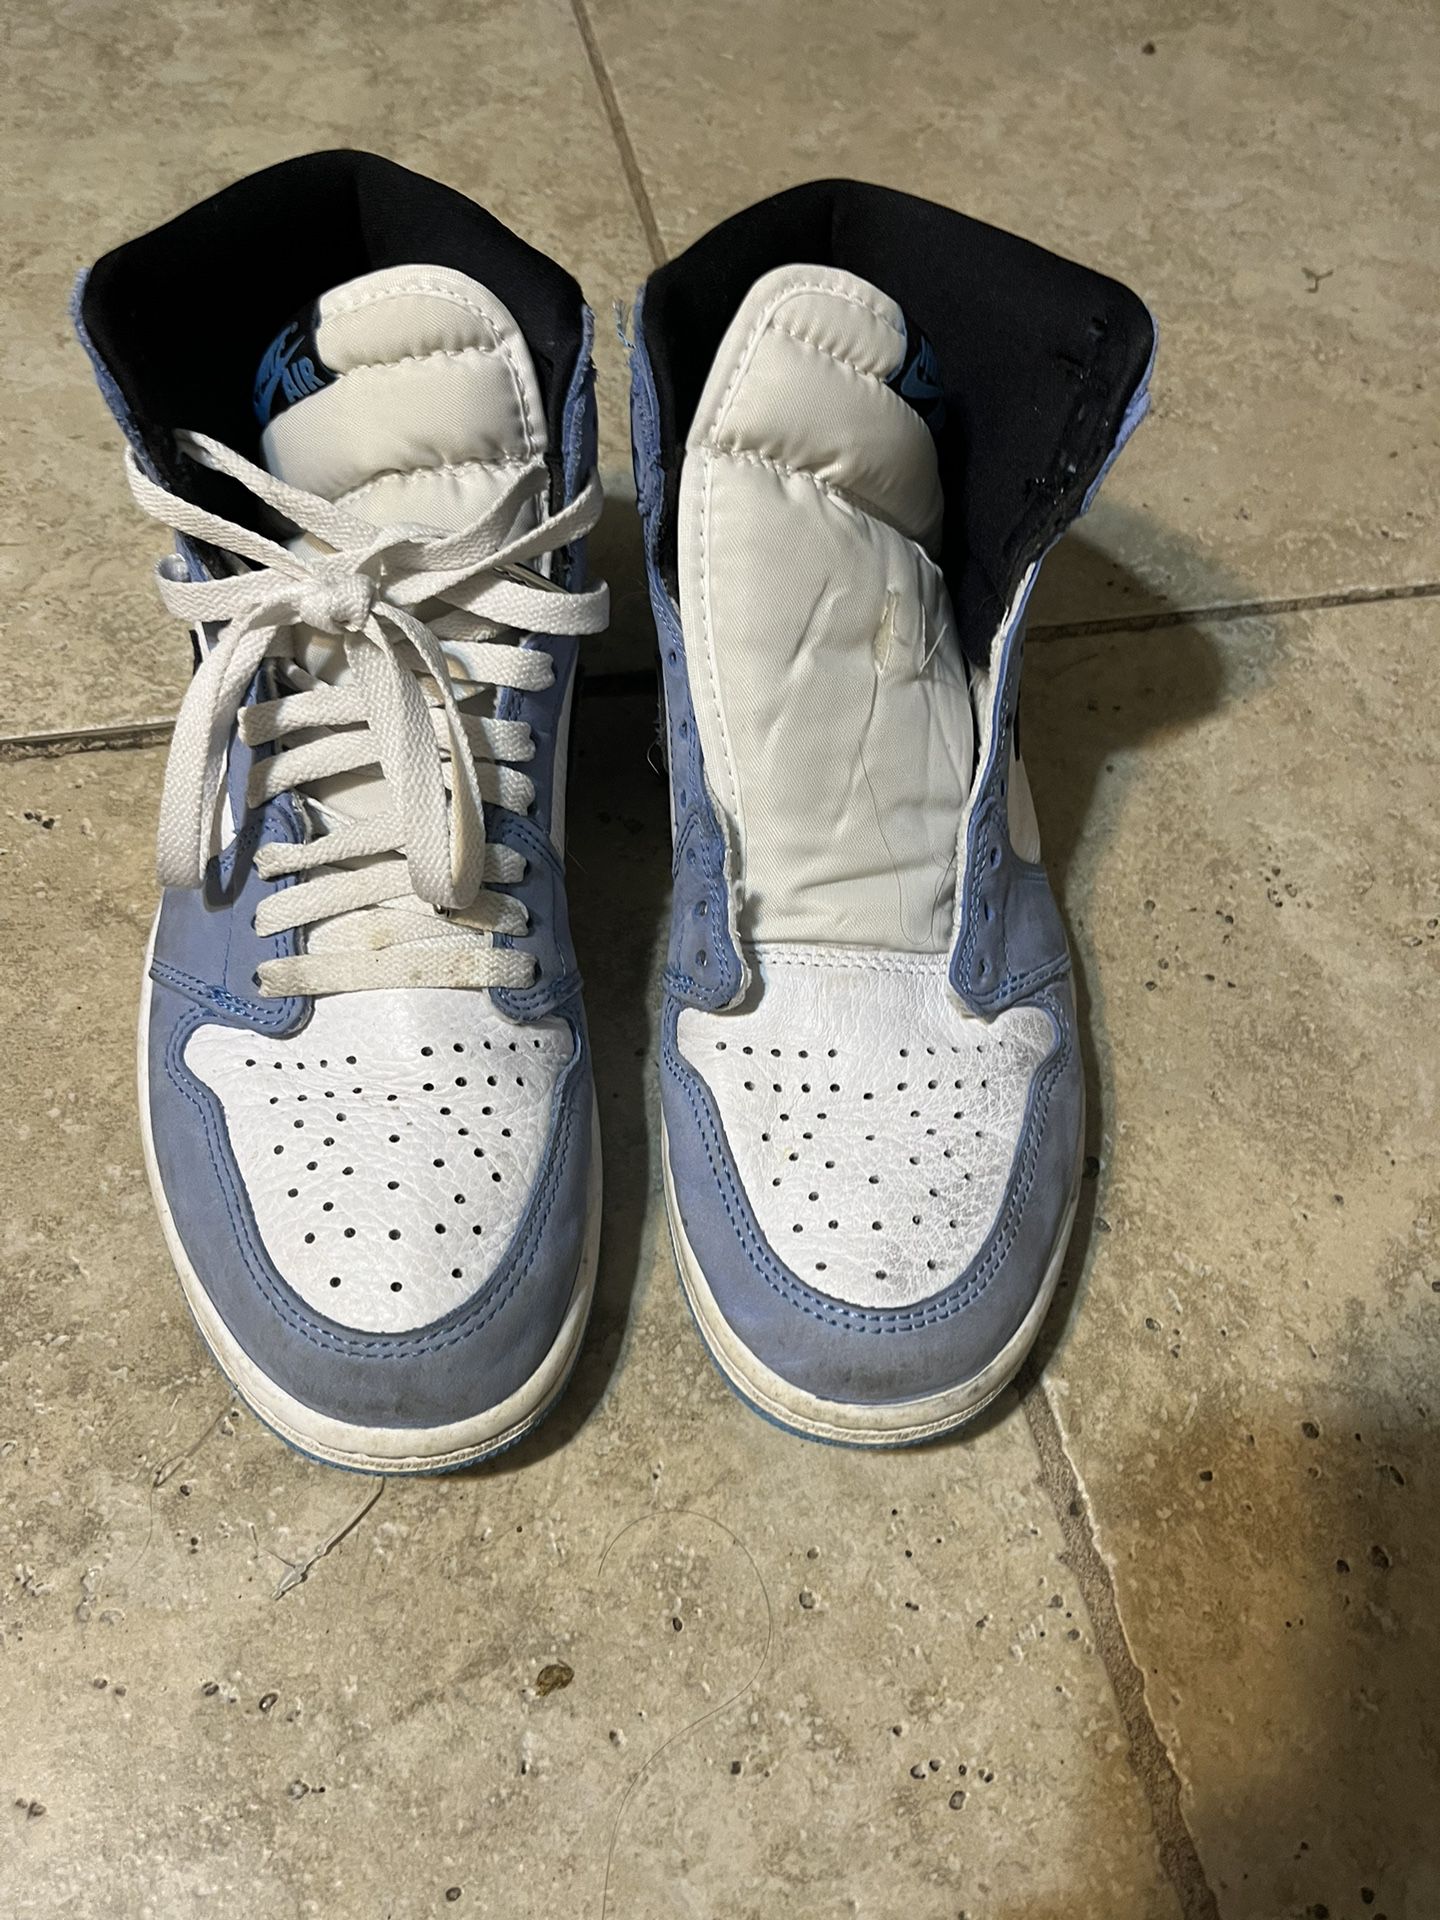 Jordan 1 Light Blue Size 8.5, No Box 